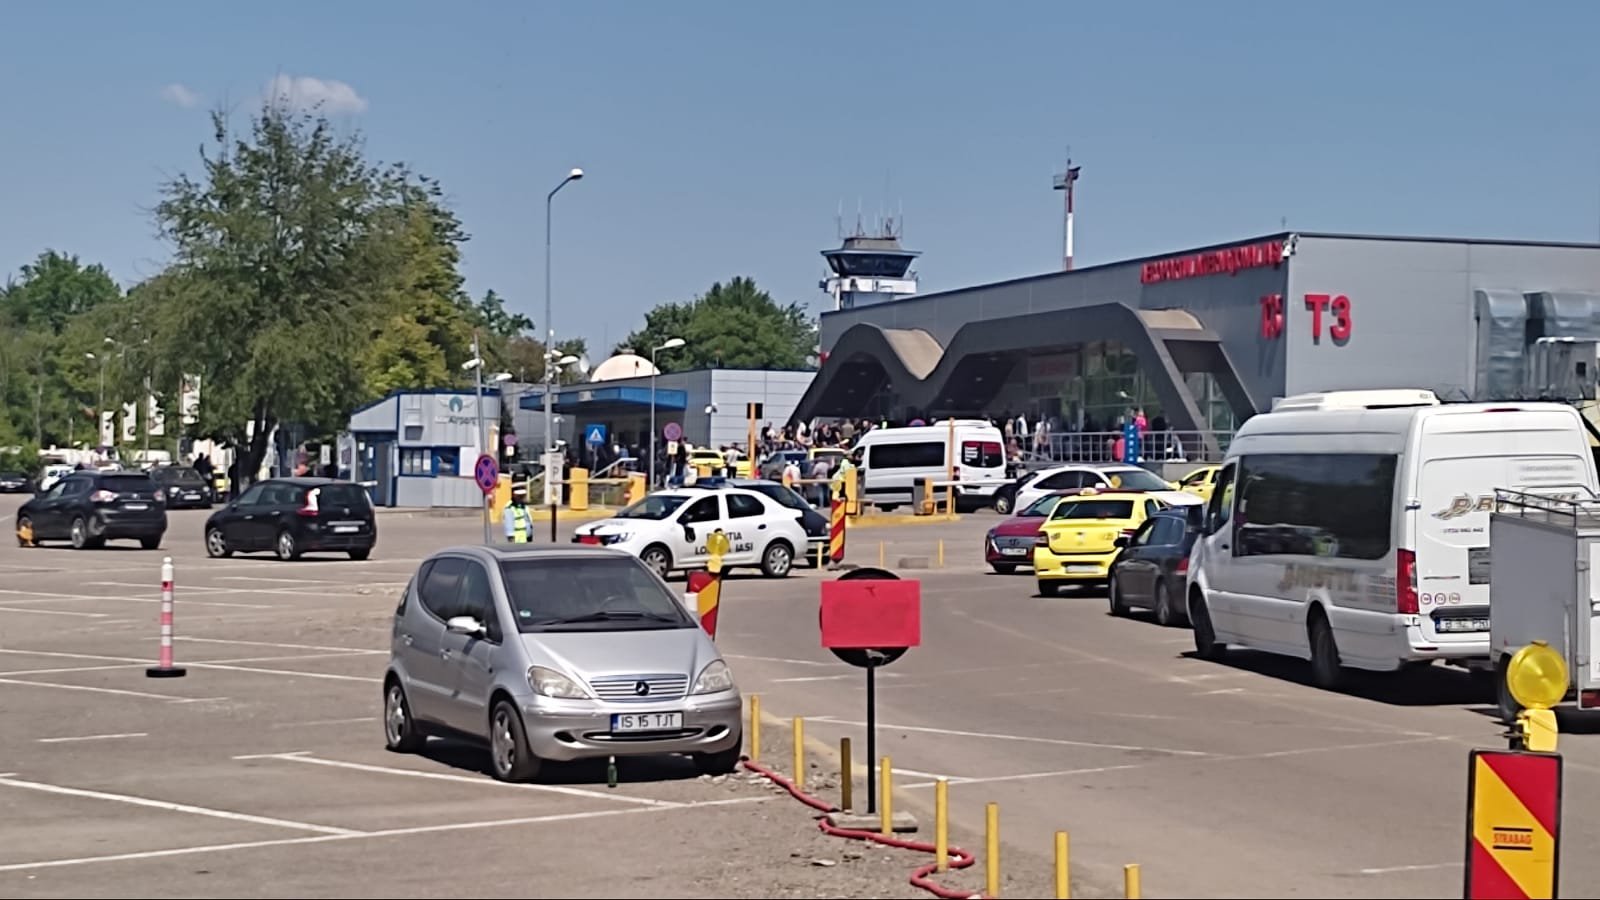  “Cod roşu” la Aeroportul Iaşi: Aglomeraţie, cozi de maşini, dar şi parcări goale FOTO/VIDEO